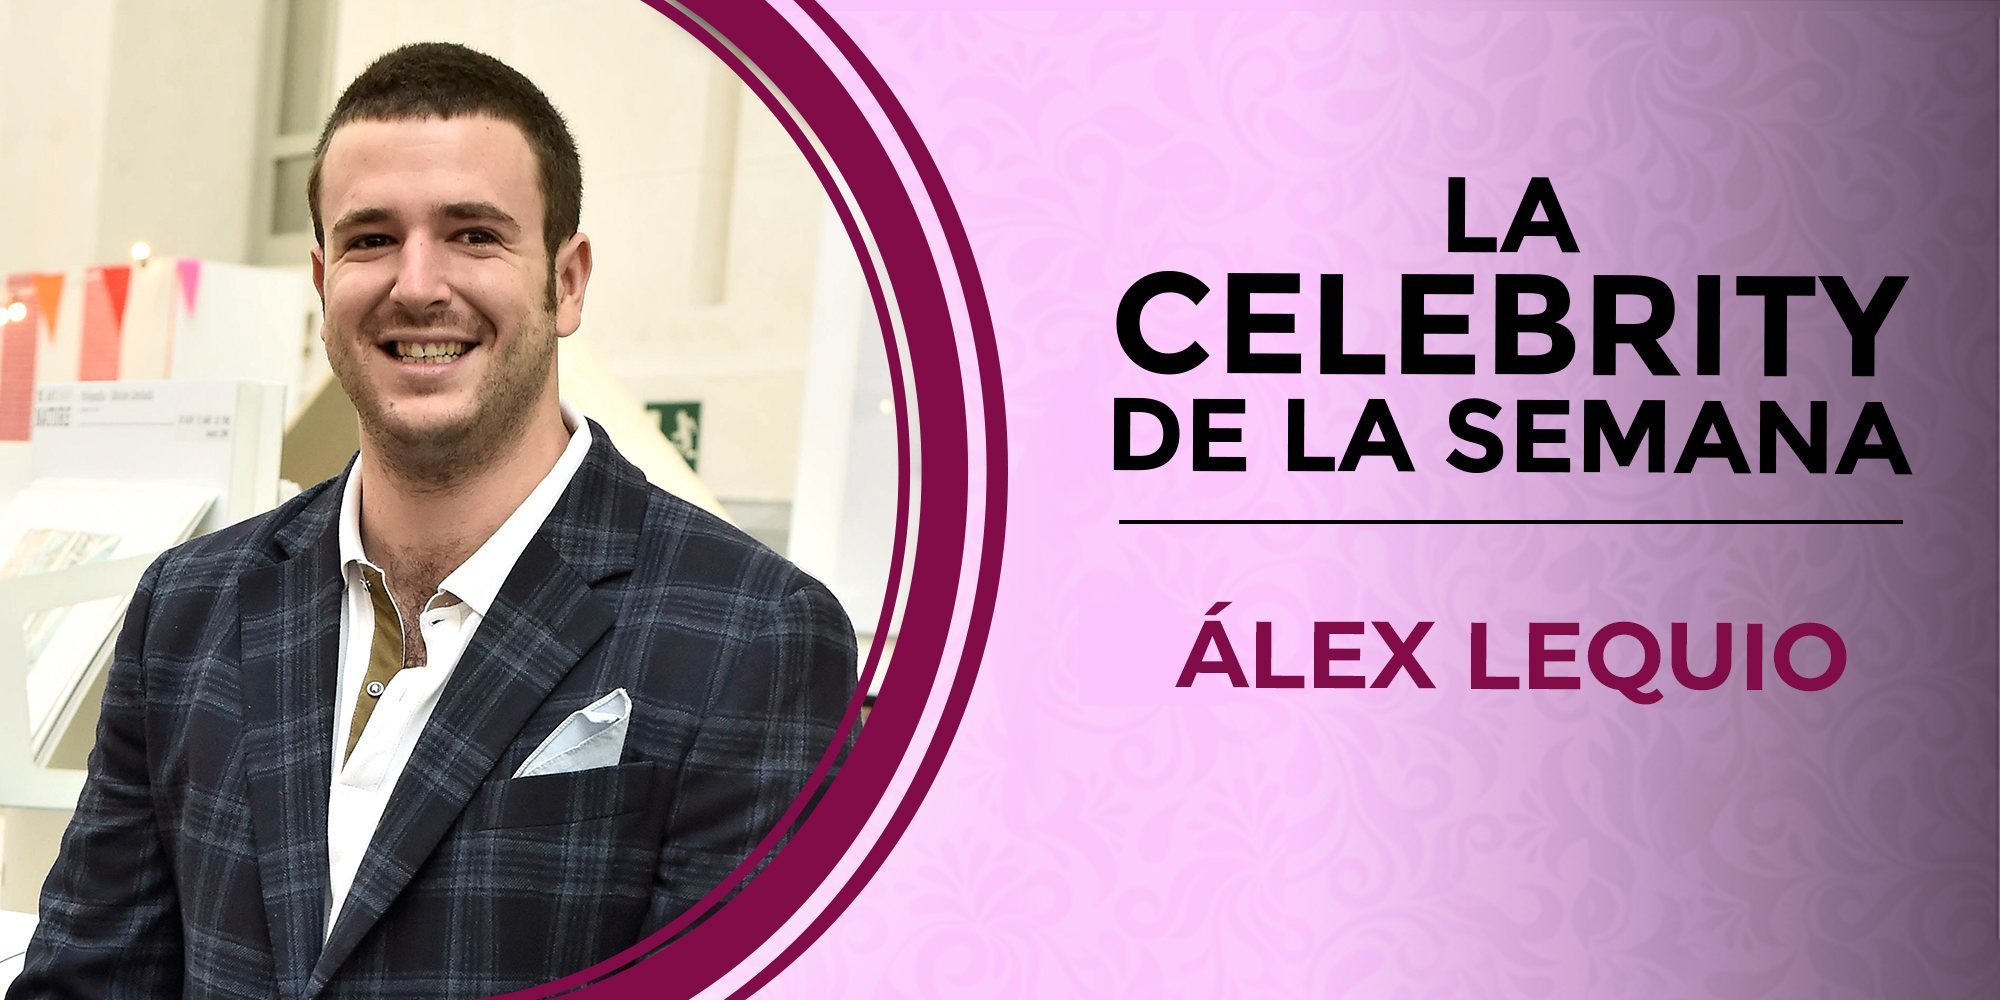 Álex Lequio, celebrity de la semana por su regreso a España tras luchar contra el cáncer en Estados Unidos